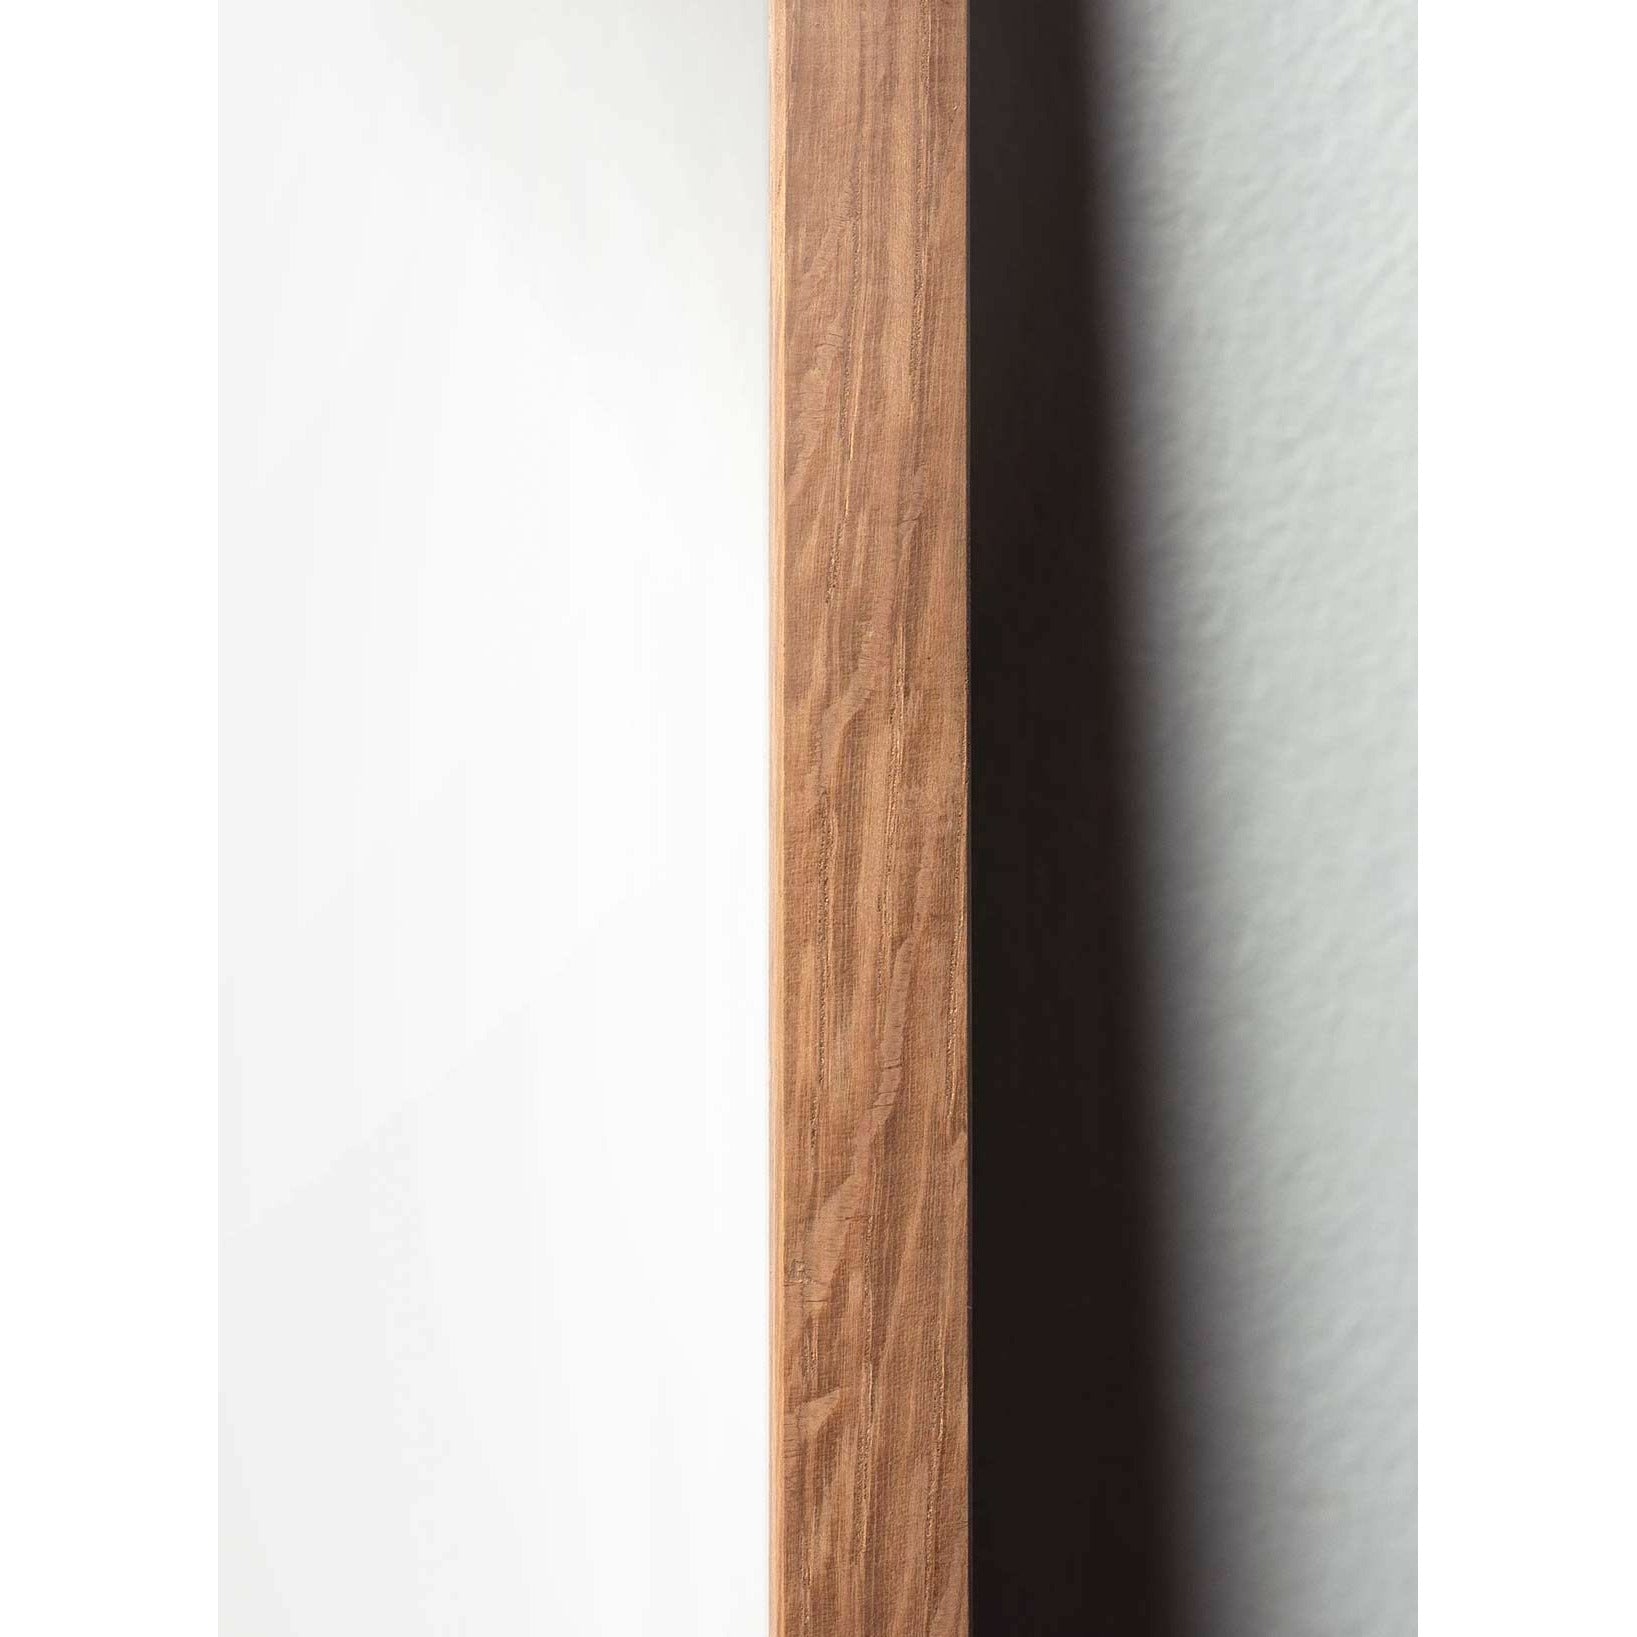 Plakat ikon mrówek mrówki, rama wykonana z jasnego drewna 50x70 cm, szary